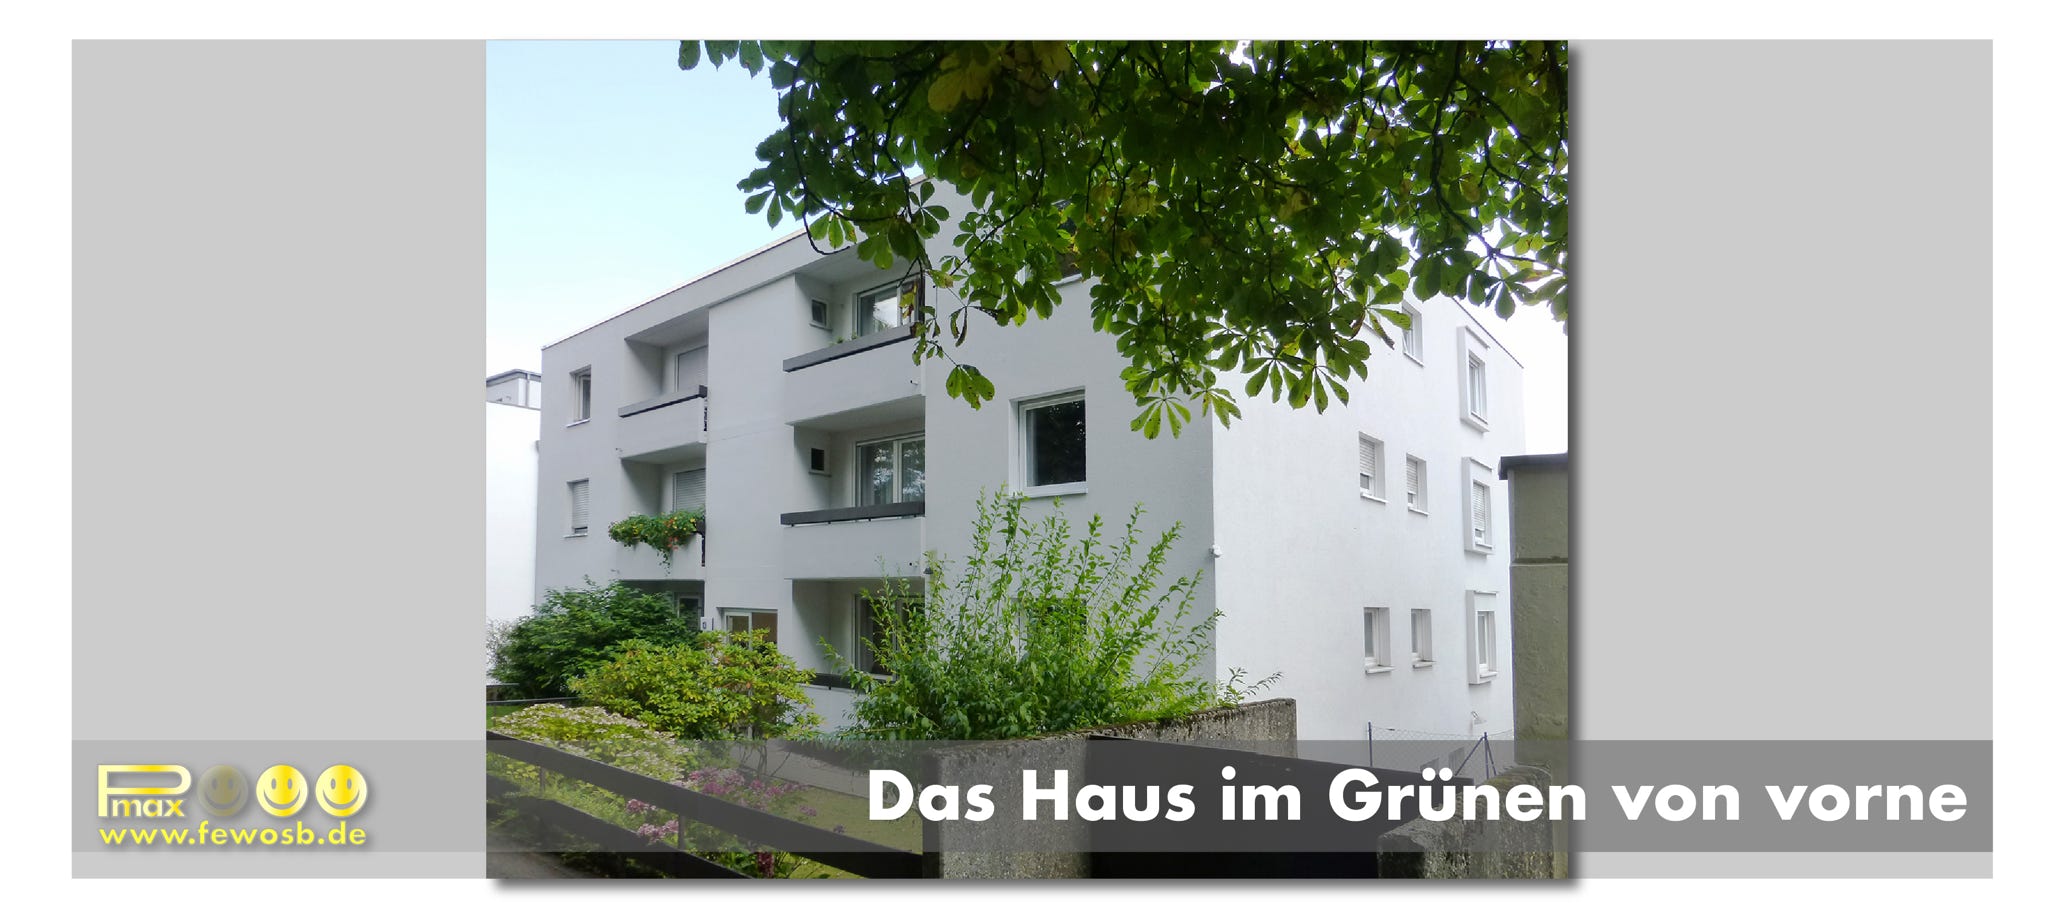 Das Haus liegt im Grünen in einer des besten Lagen von Saarbrücken. Die Ferienwohnung liegt auf der Rückseite, in Richtung Garten